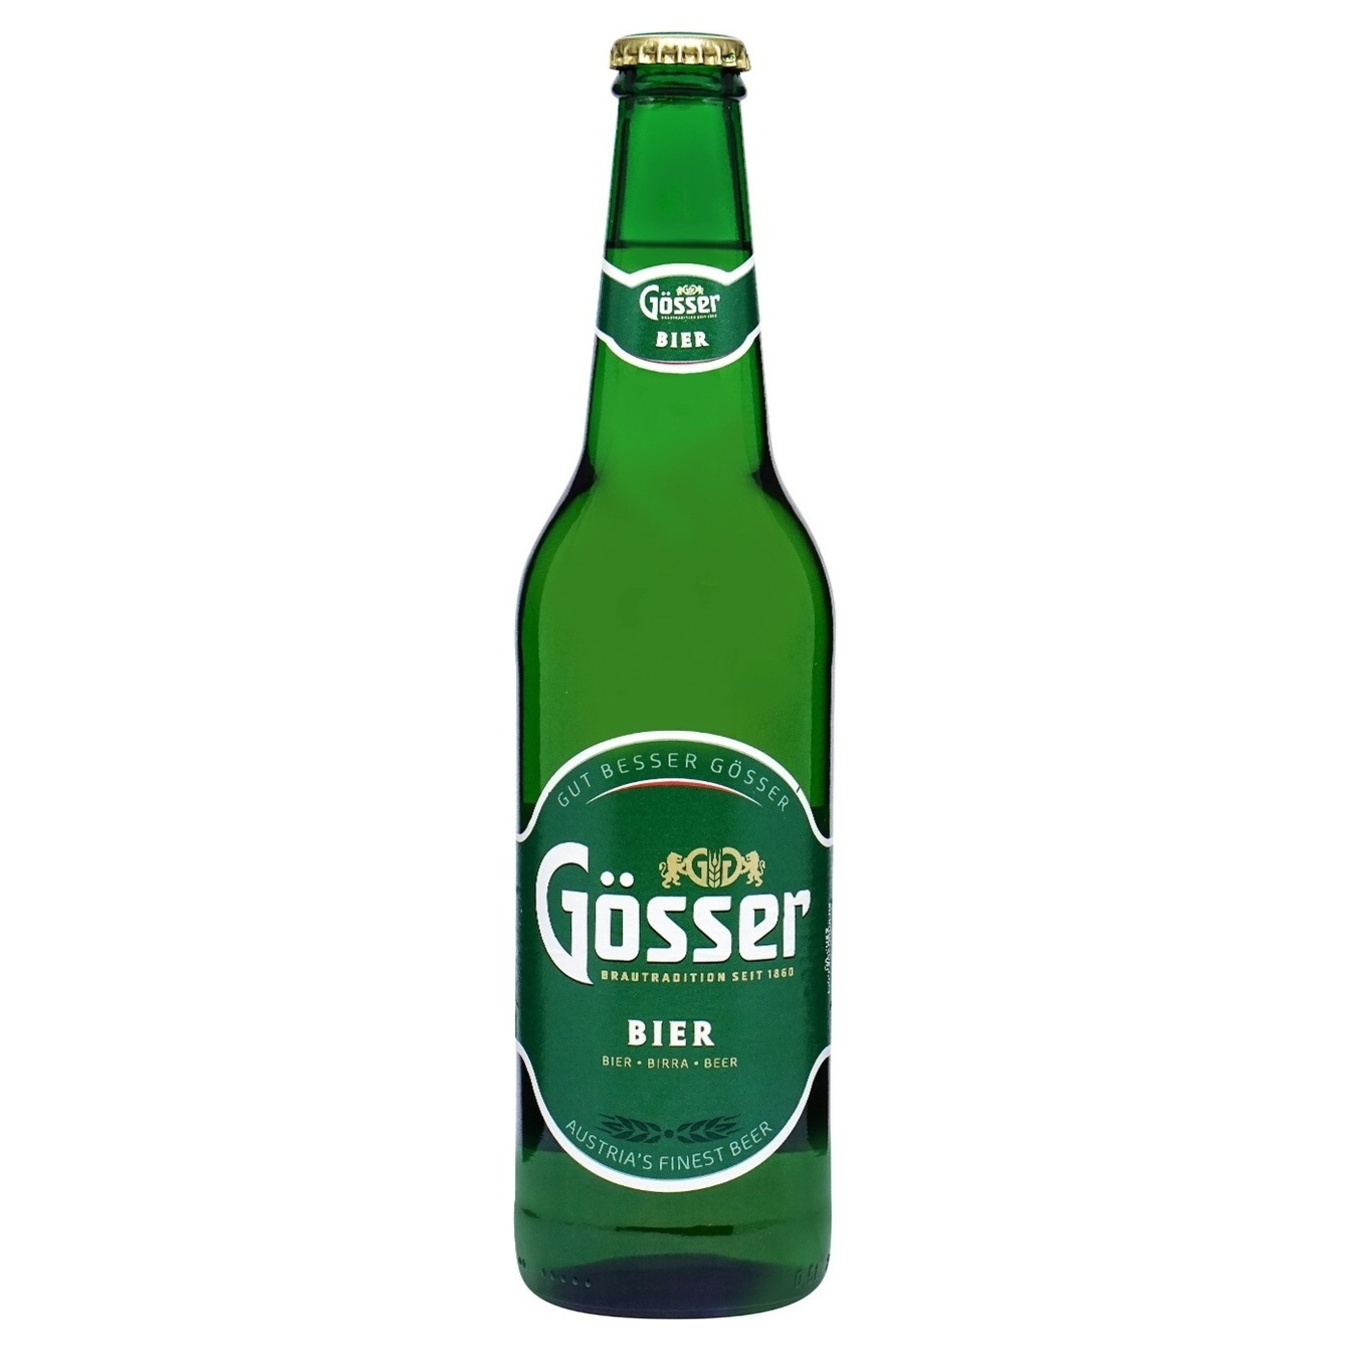 Пиво Gosser светлое 5,2% 0,5л